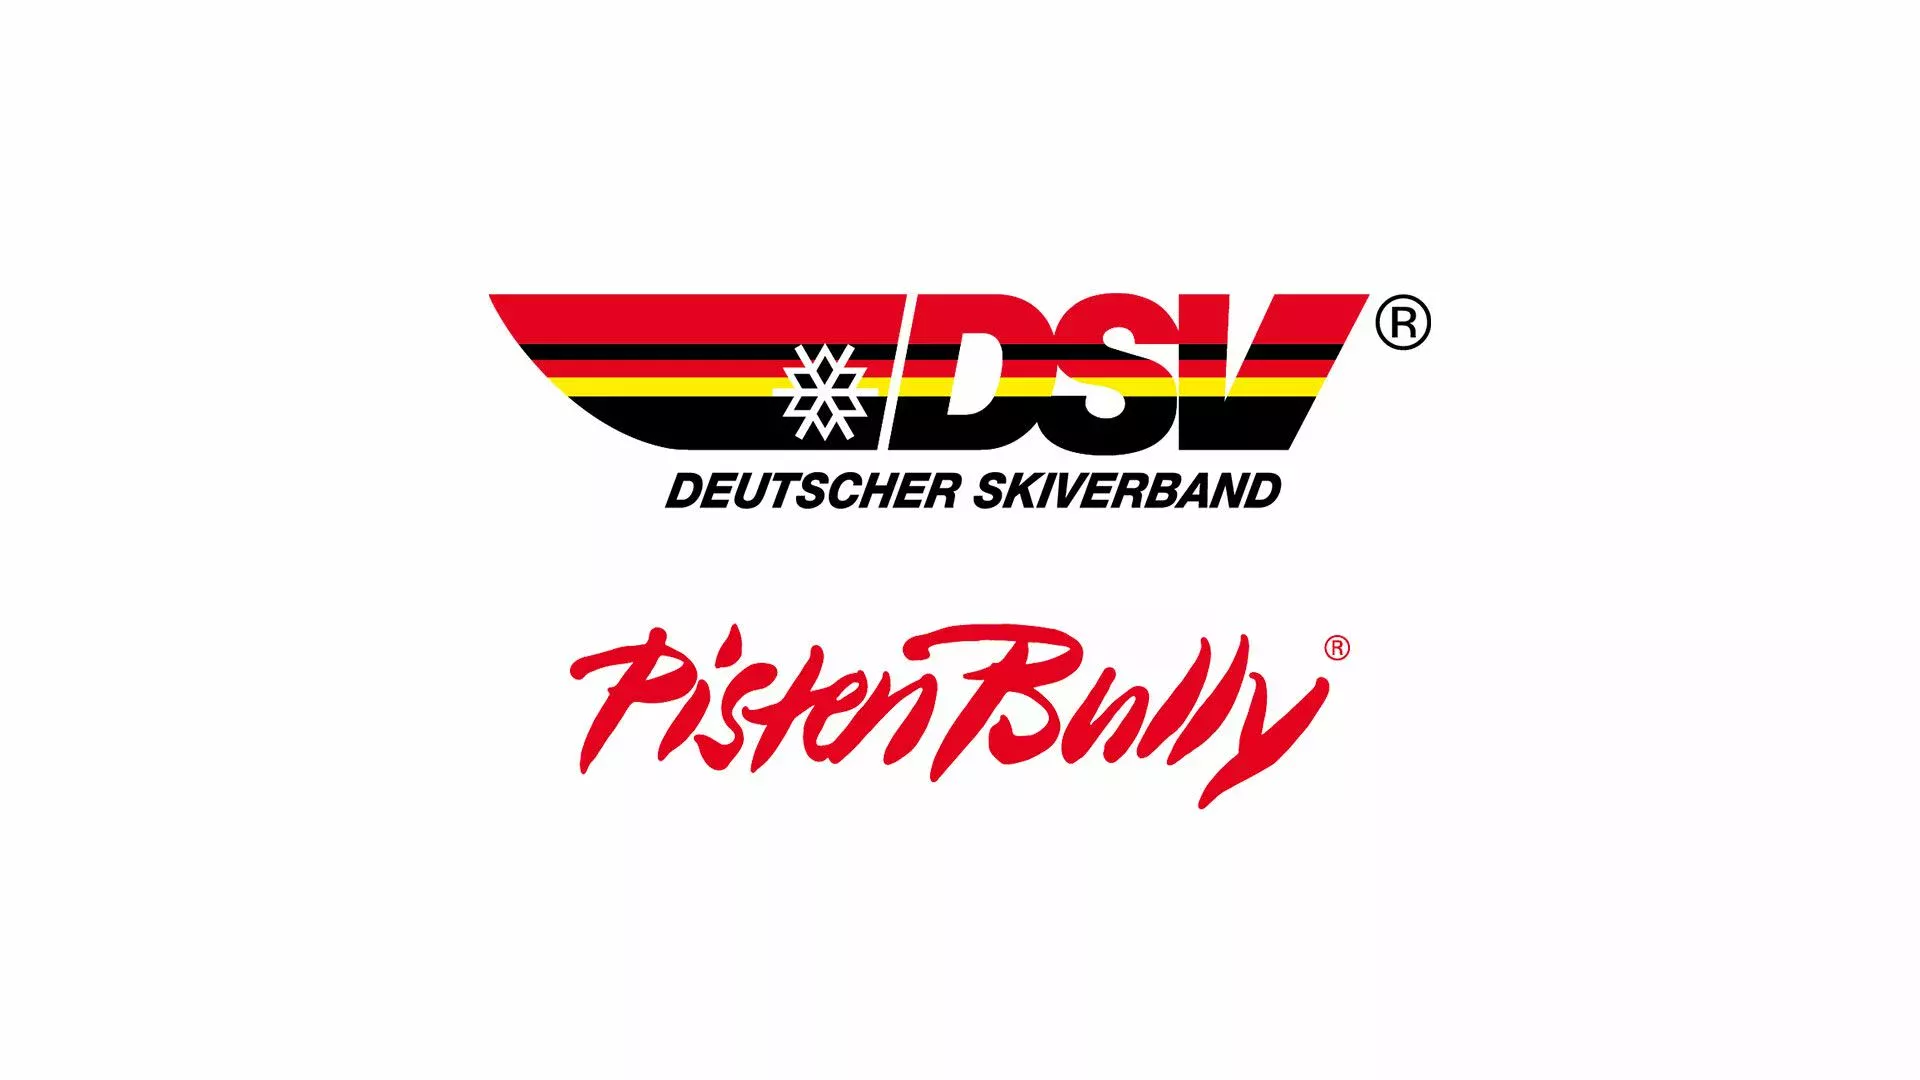 La collaboration entre Kässbohrer et le DSV englobe dorénavant aussi la promotion de relève.